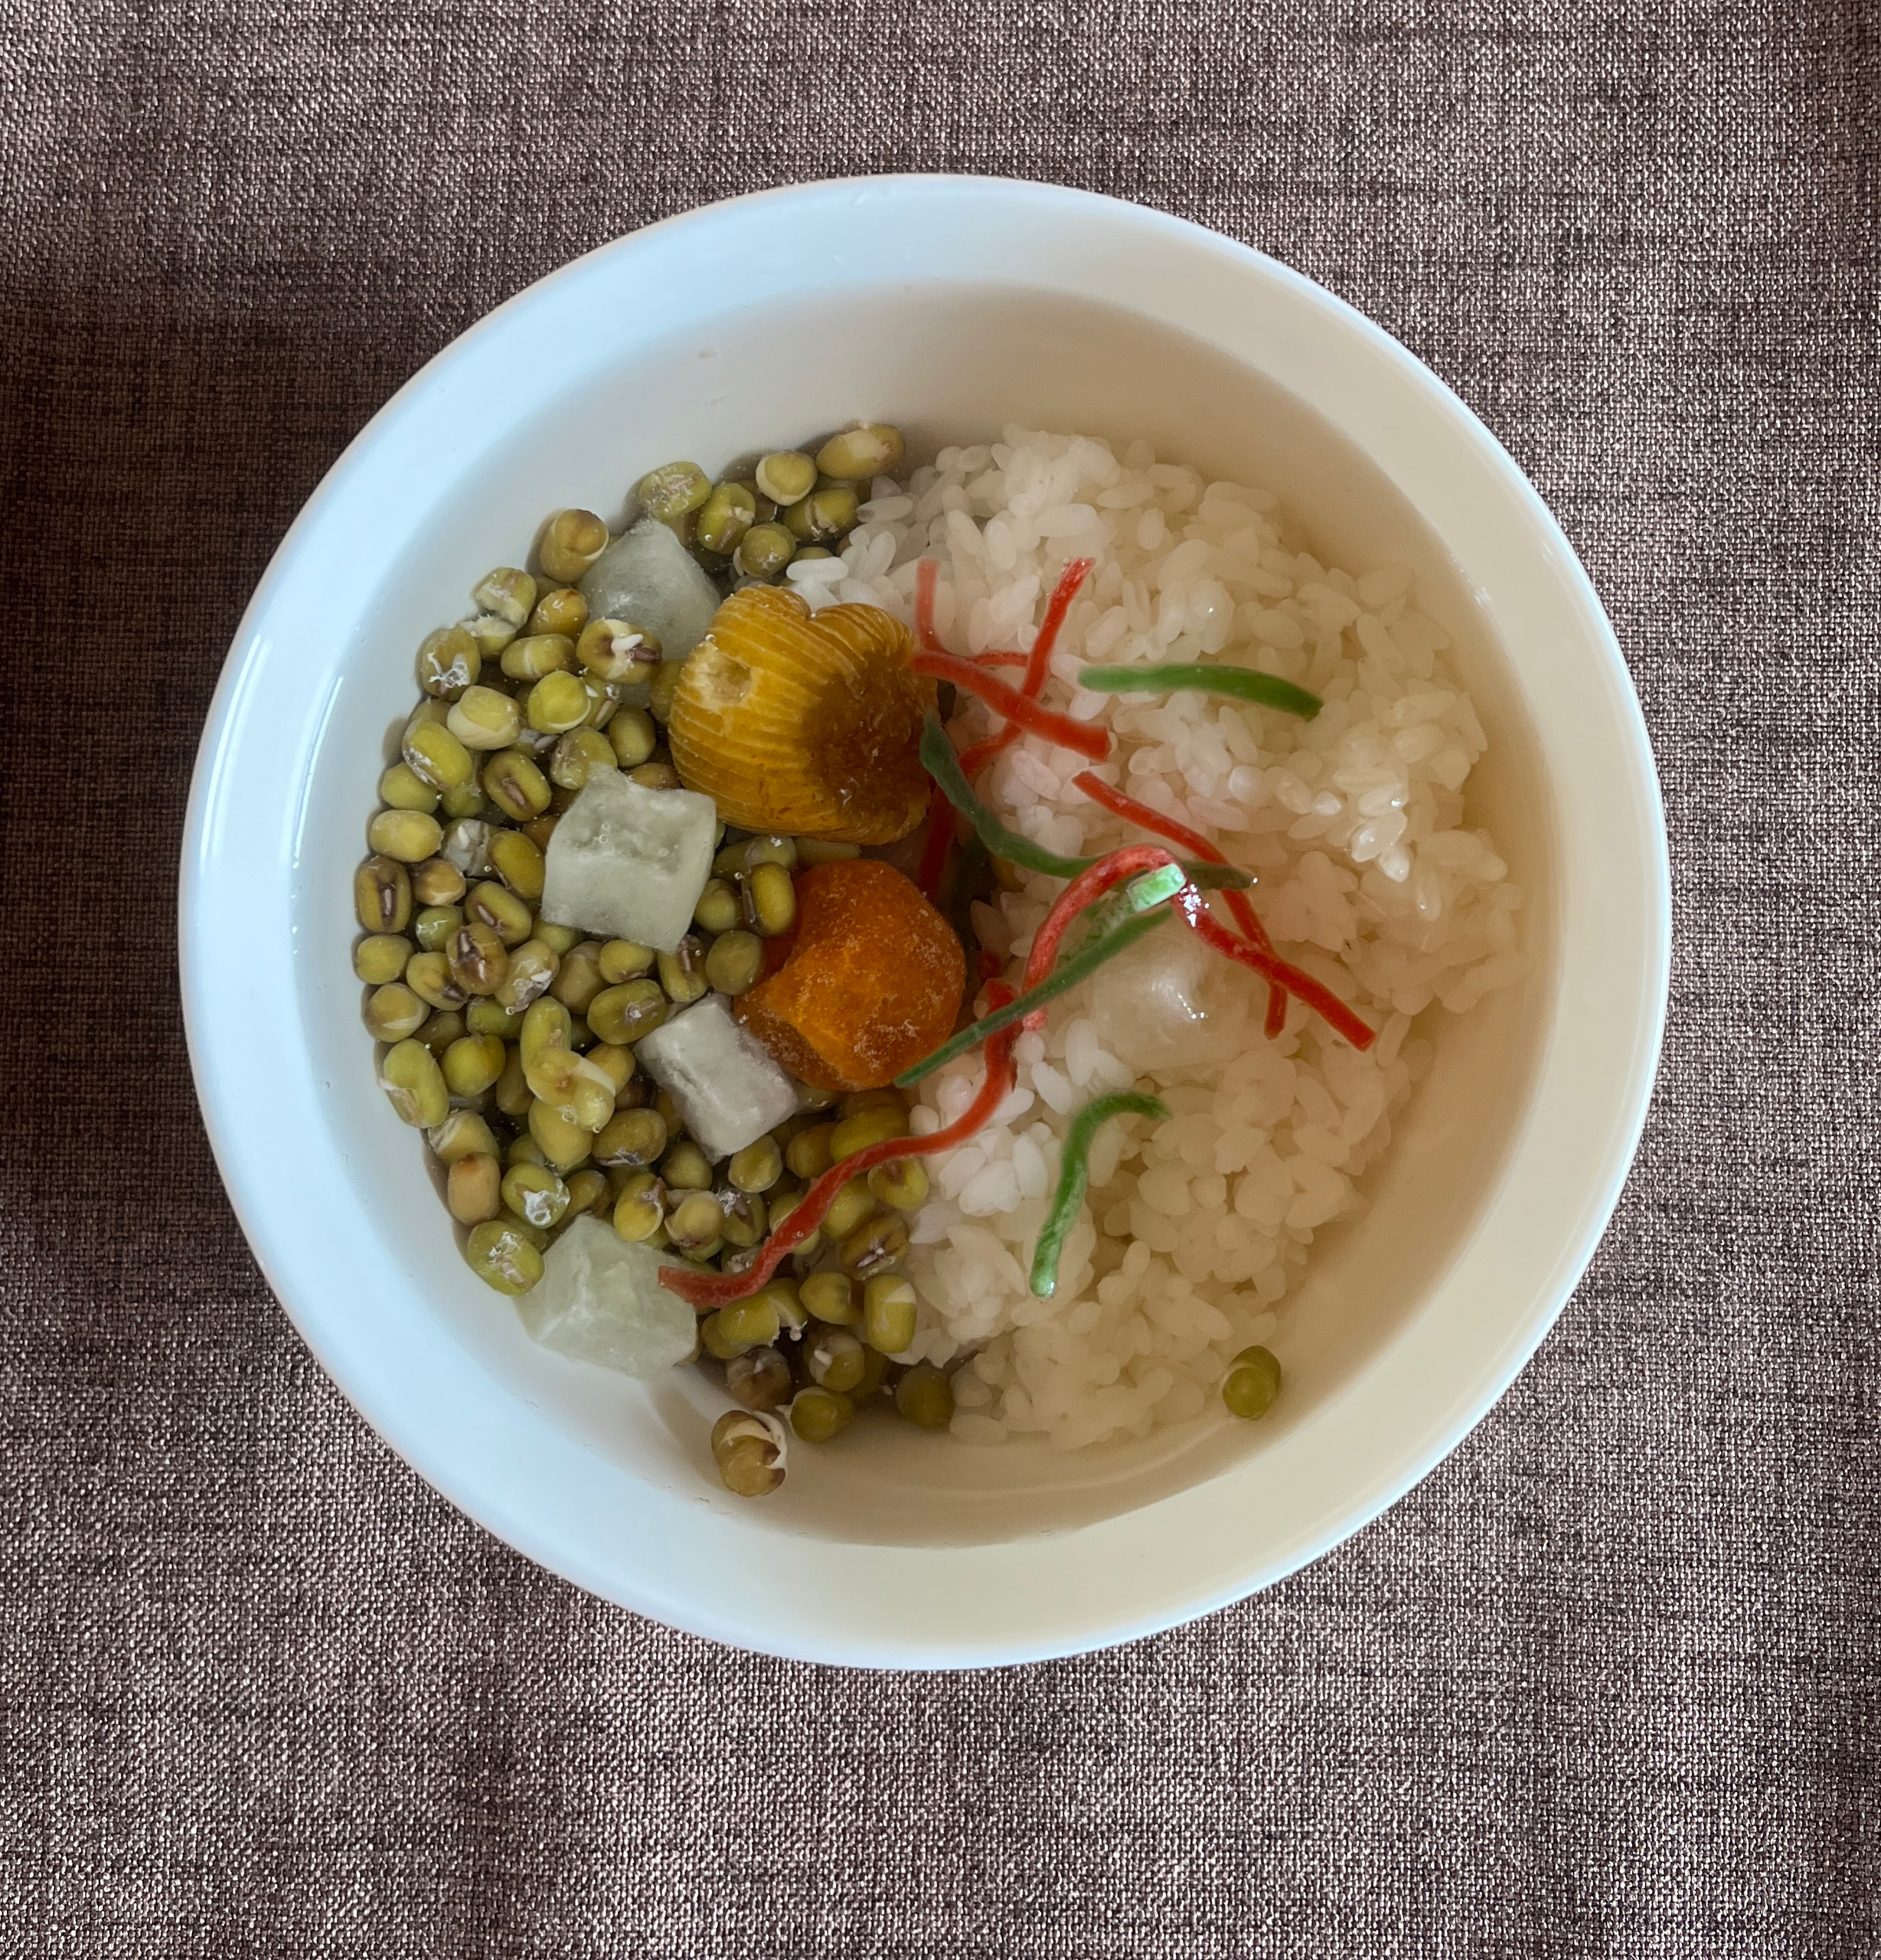 苏州特色的绿豆汤